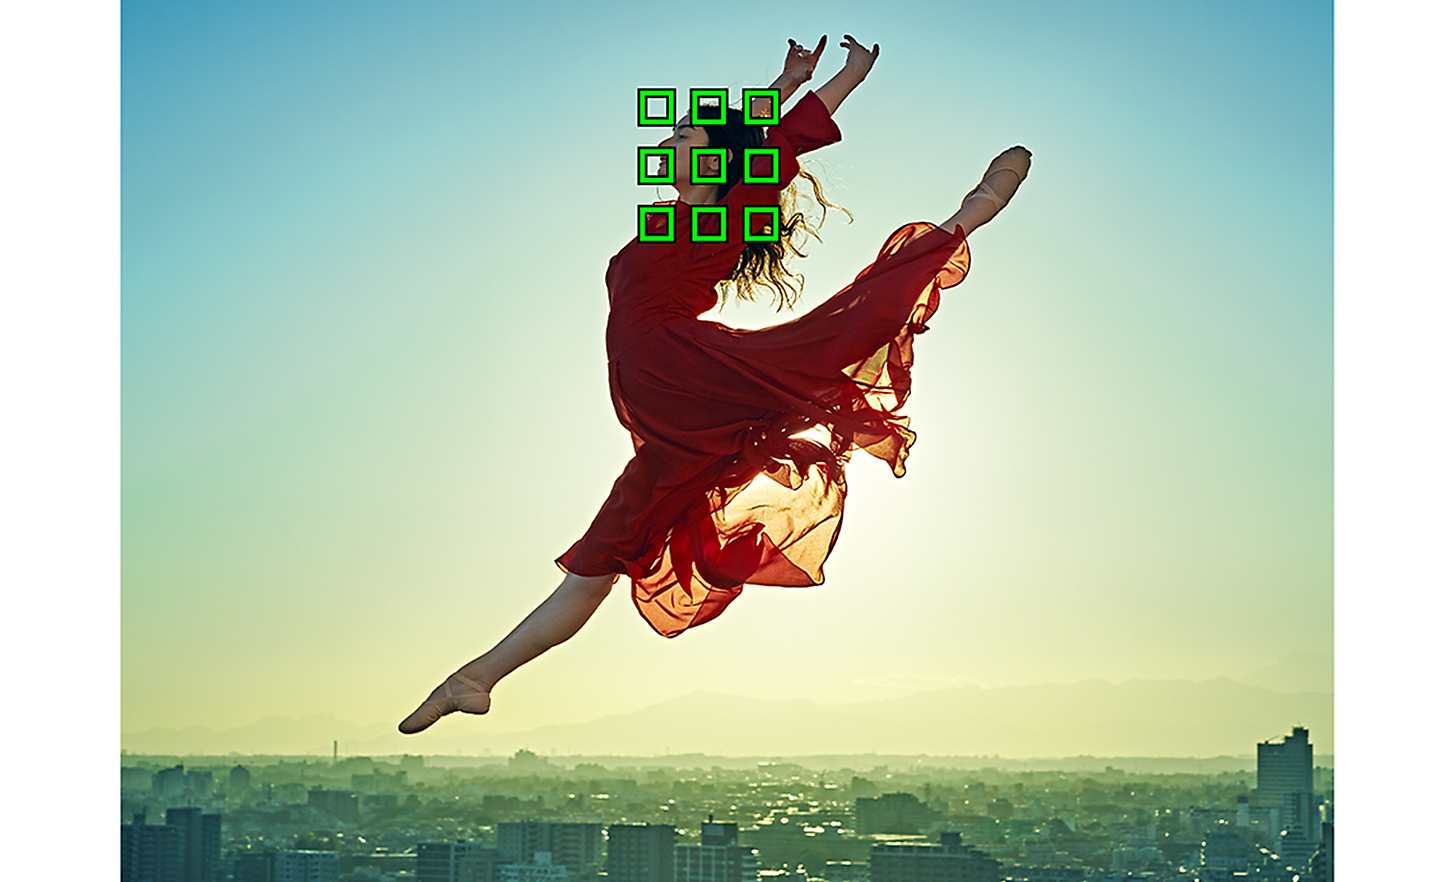 Danseuse en robe rouge en train de sauter devant un grand paysage urbain, 9 carrés verts regroupés représentant la détection de sujet basée sur l'IA